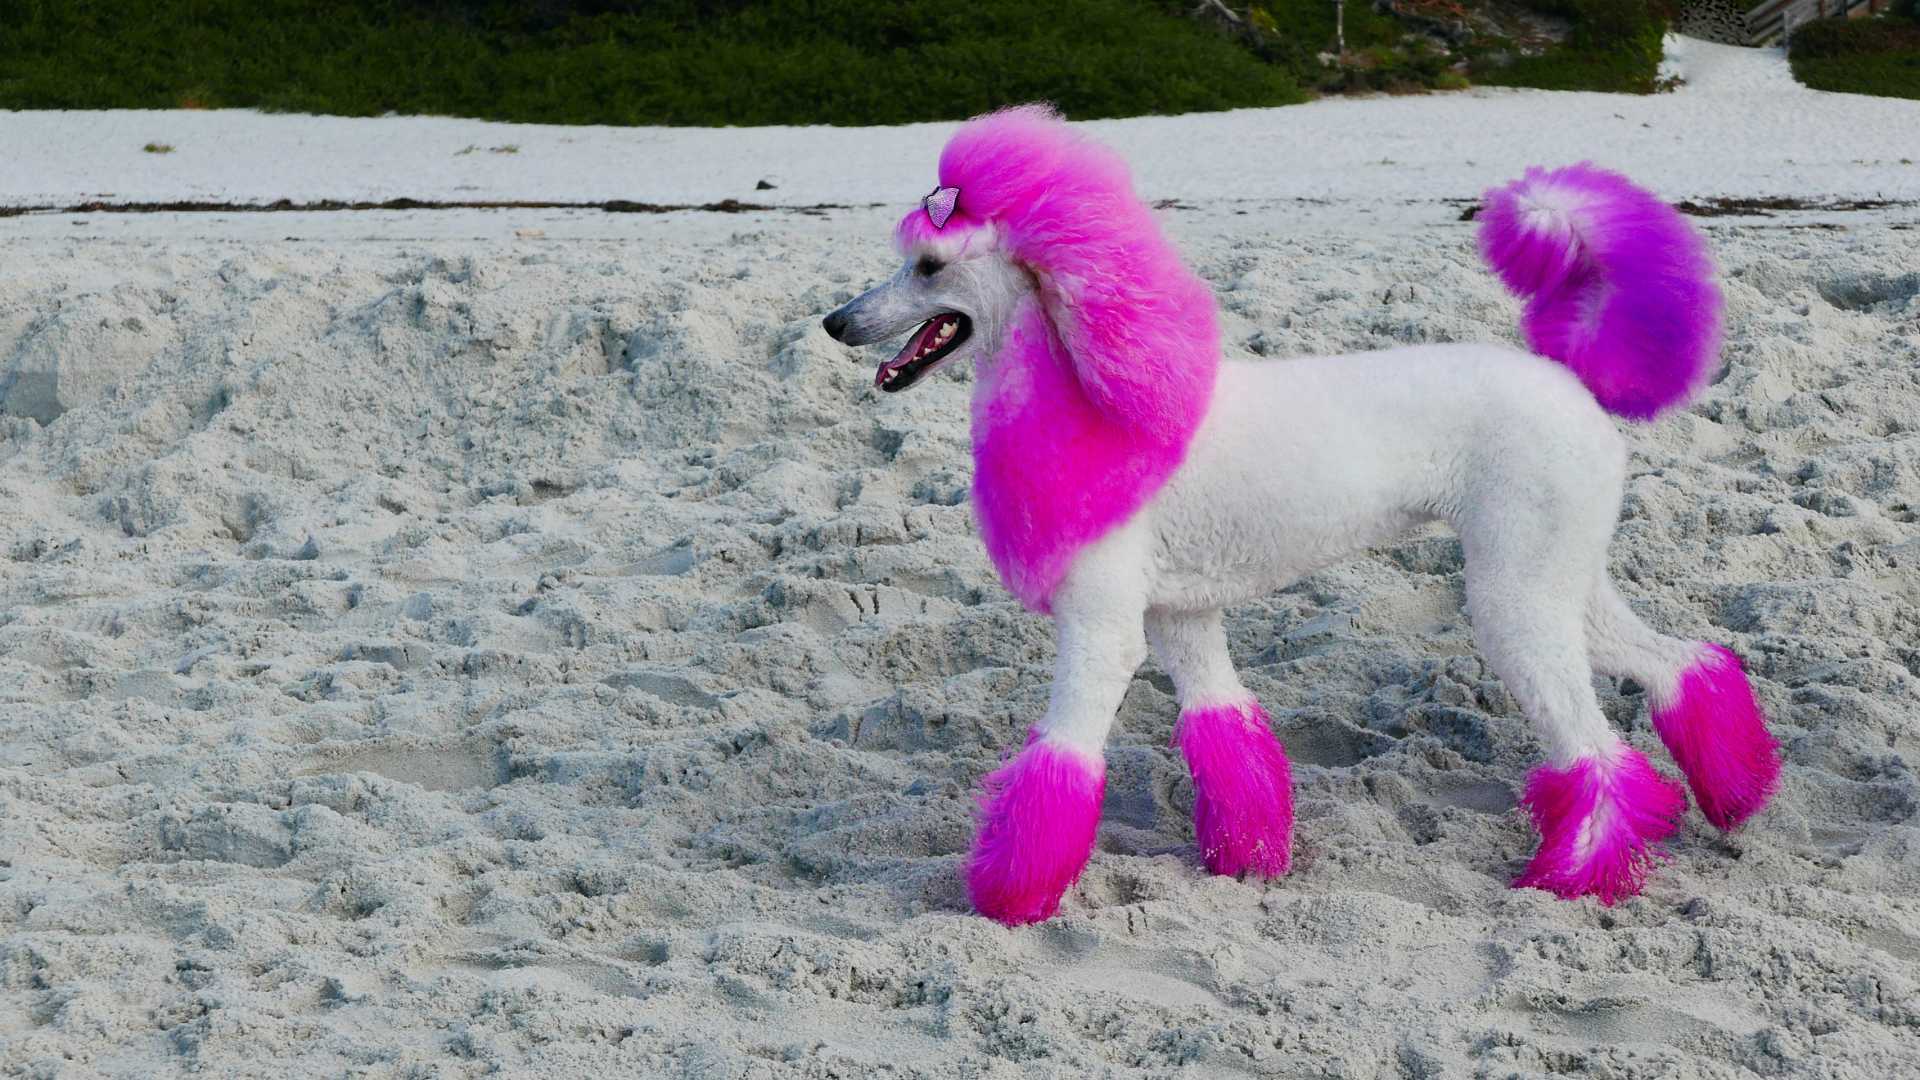 Um poodle branco com orelhas, colo, patas e rabo rosa.